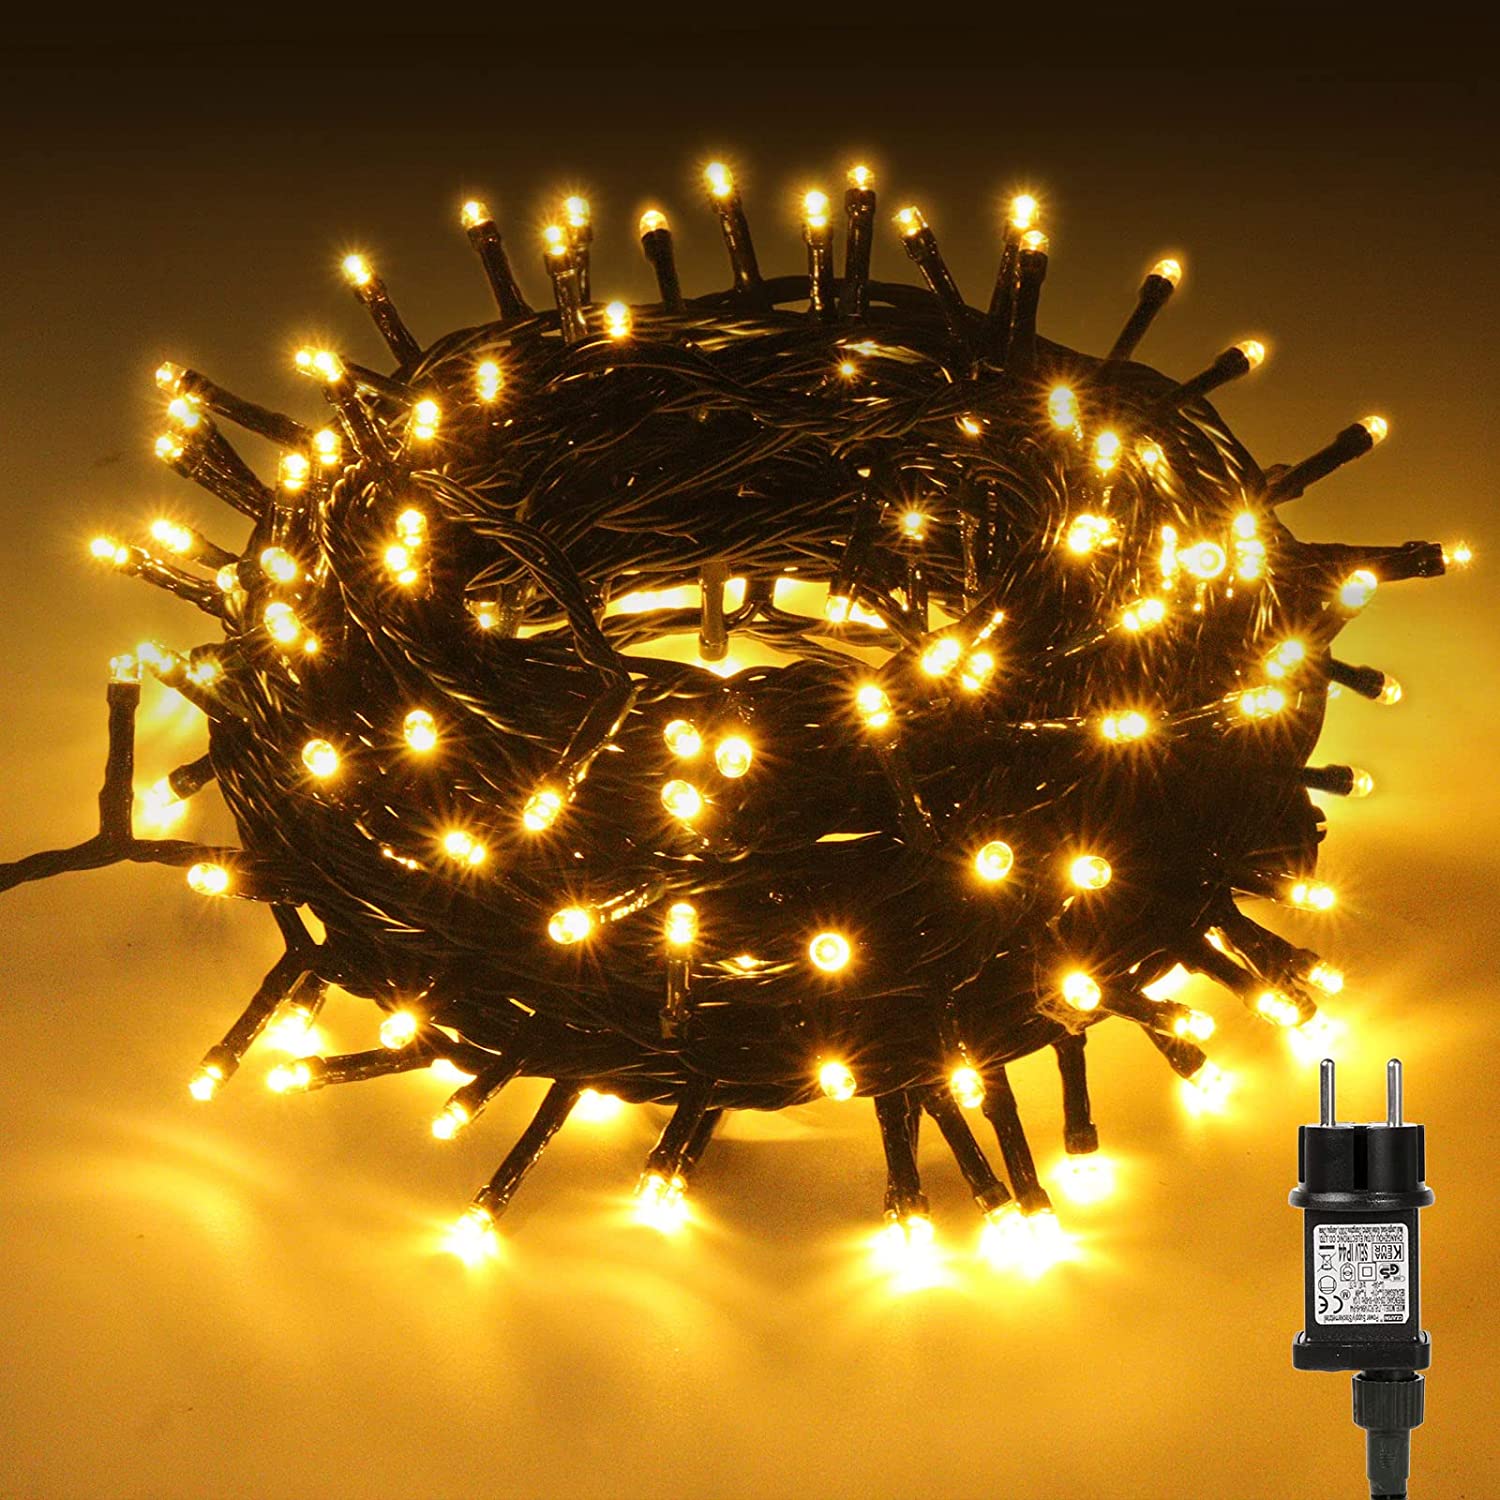 Luci natalizie 200 LED Livarno Home in offerta: da Lidl al prezzo di 11 euro